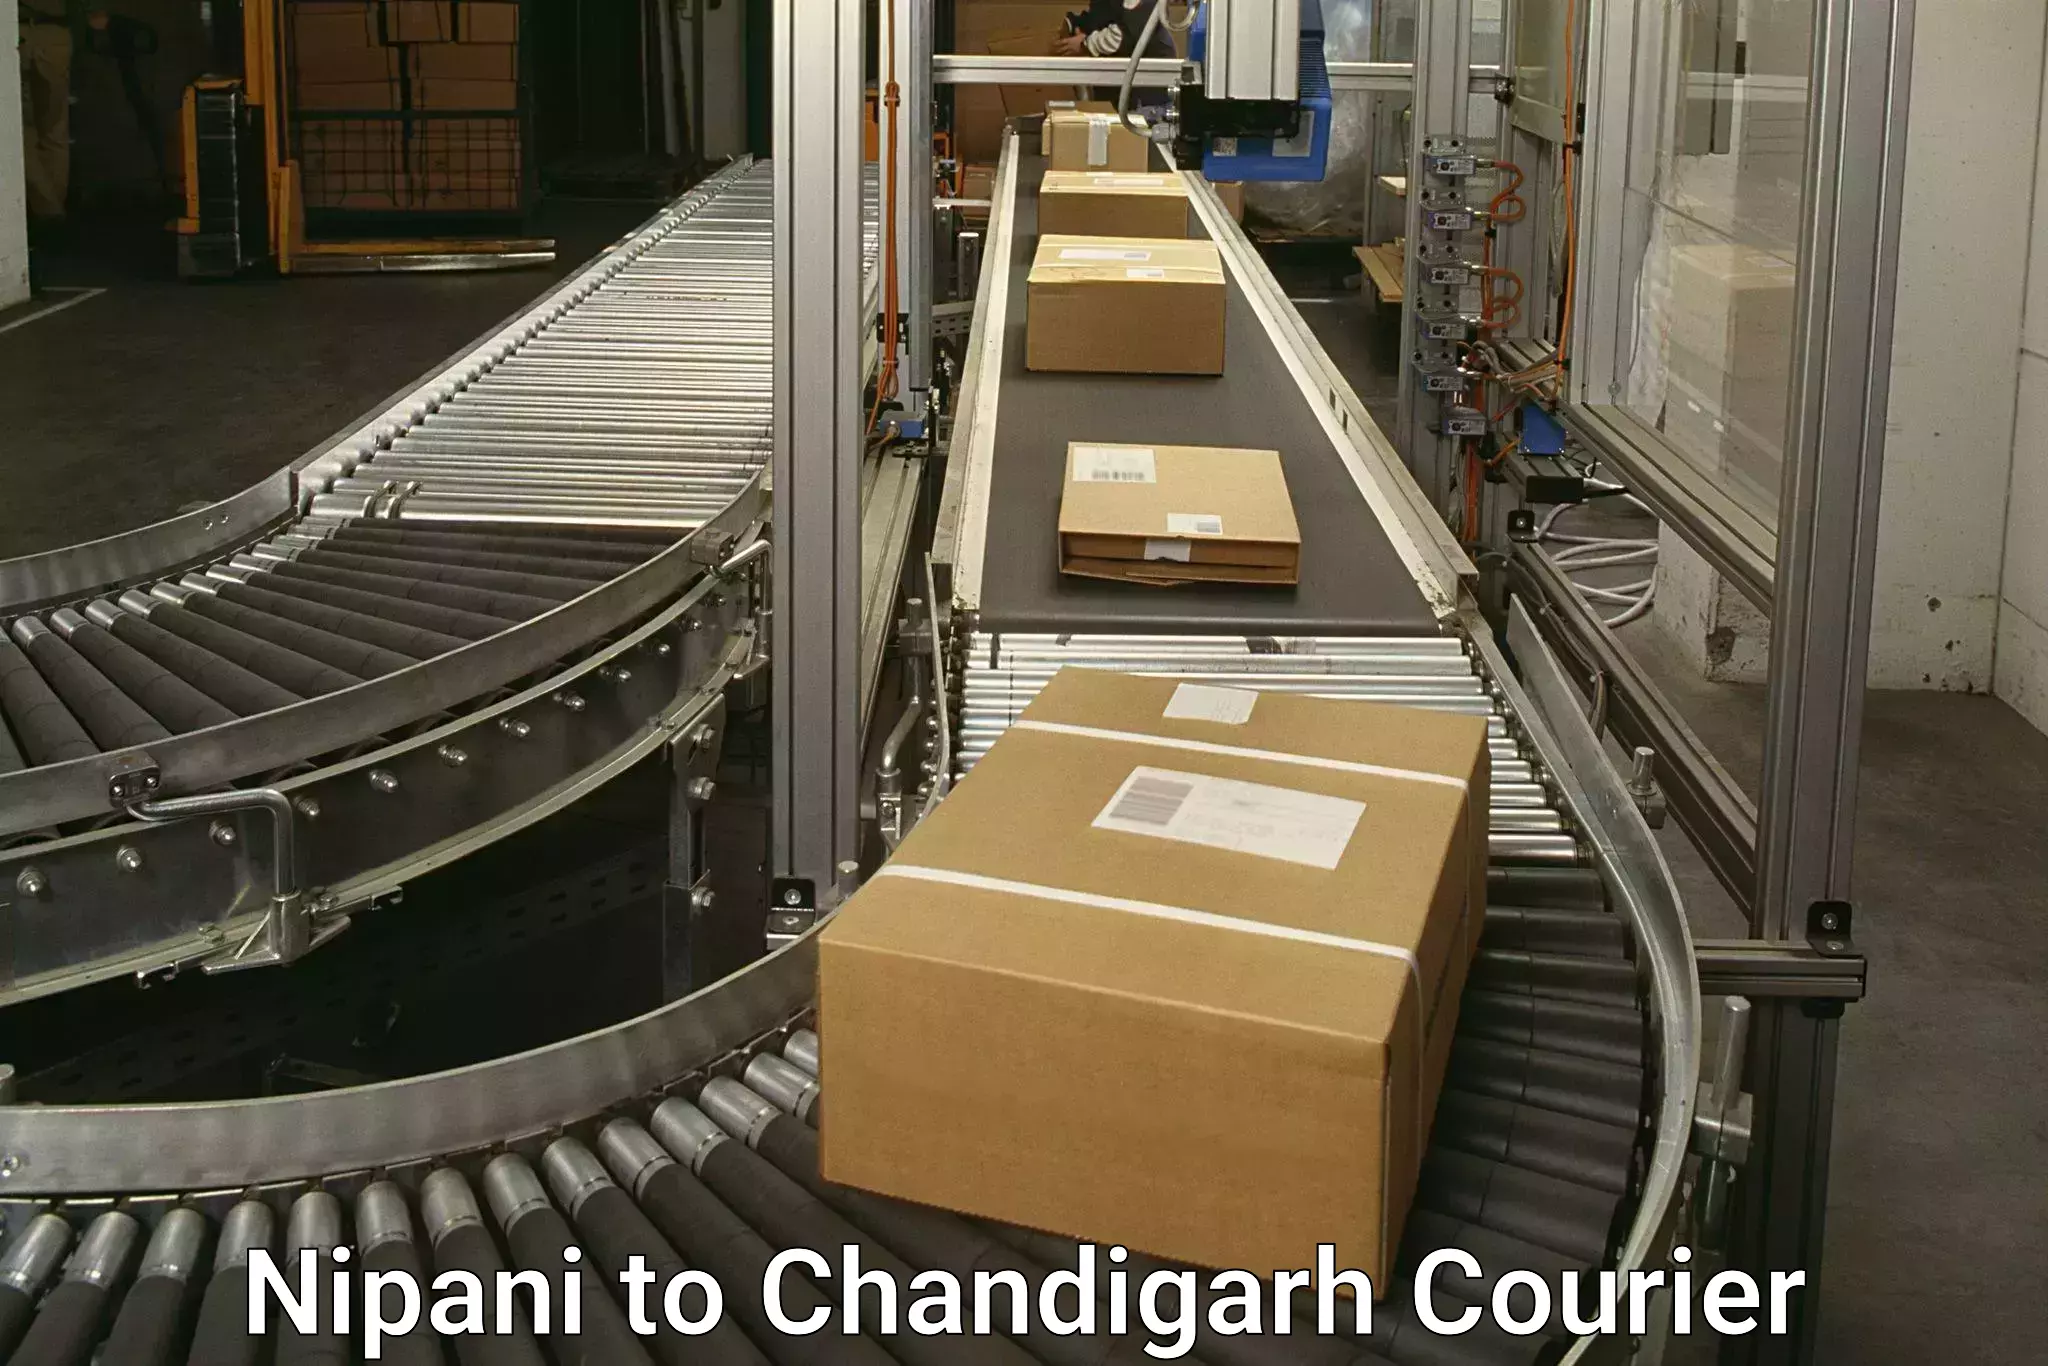 Seamless shipping experience Nipani to Panjab University Chandigarh